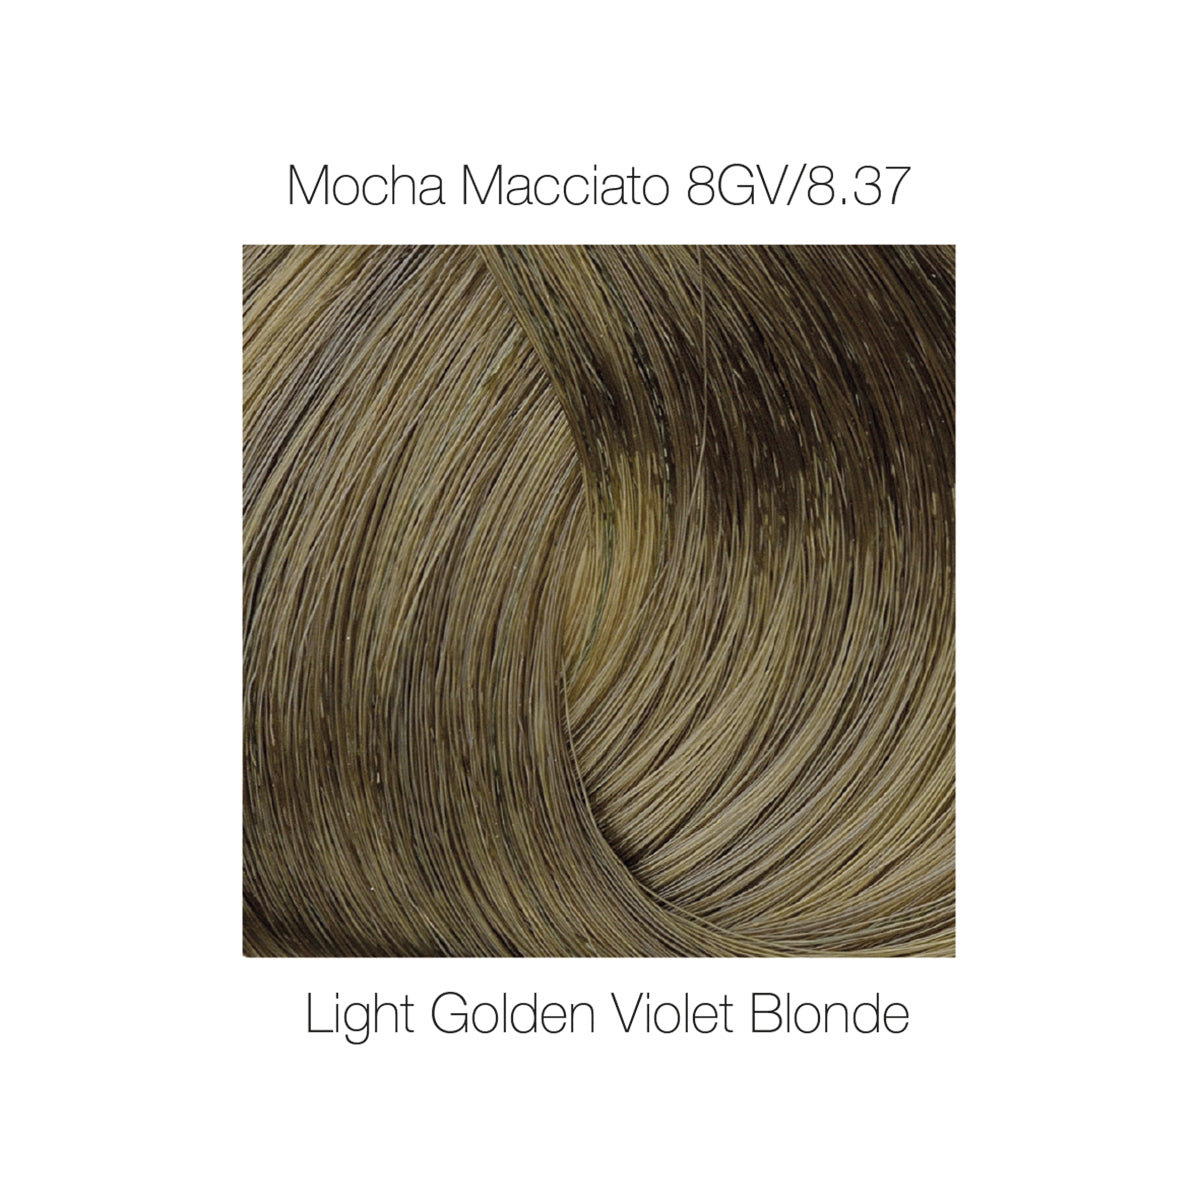 Liquid Gloss 8GV / 8.37 Mocha Macchiato